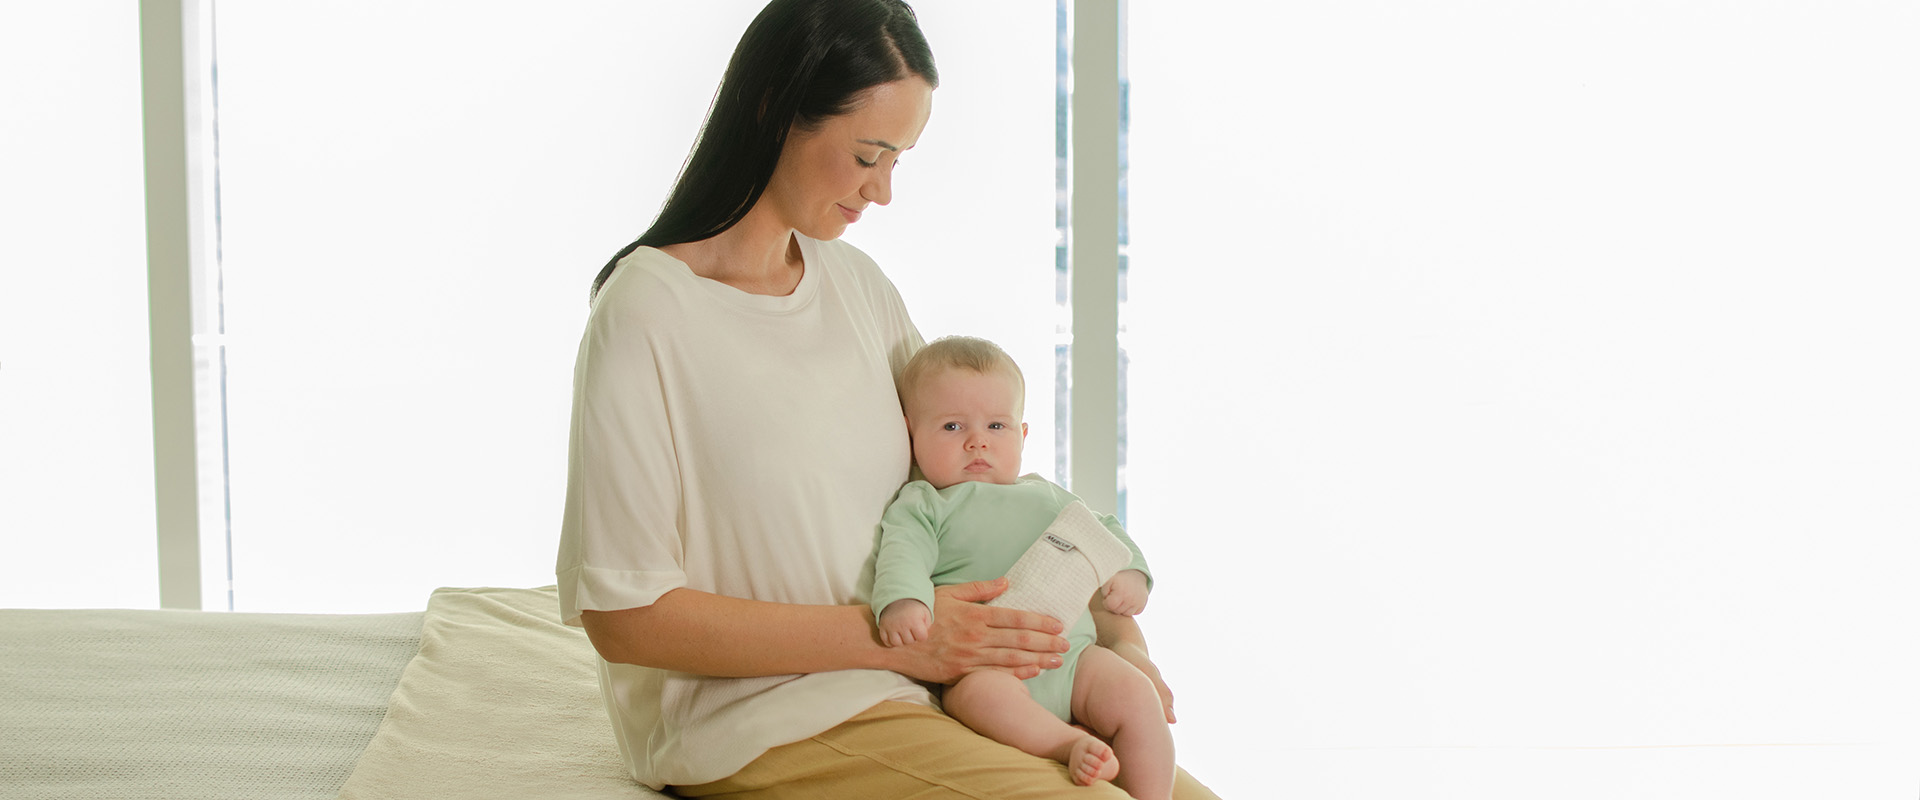 Entenda: a dieta da mãe pode aliviar a cólica do bebê?